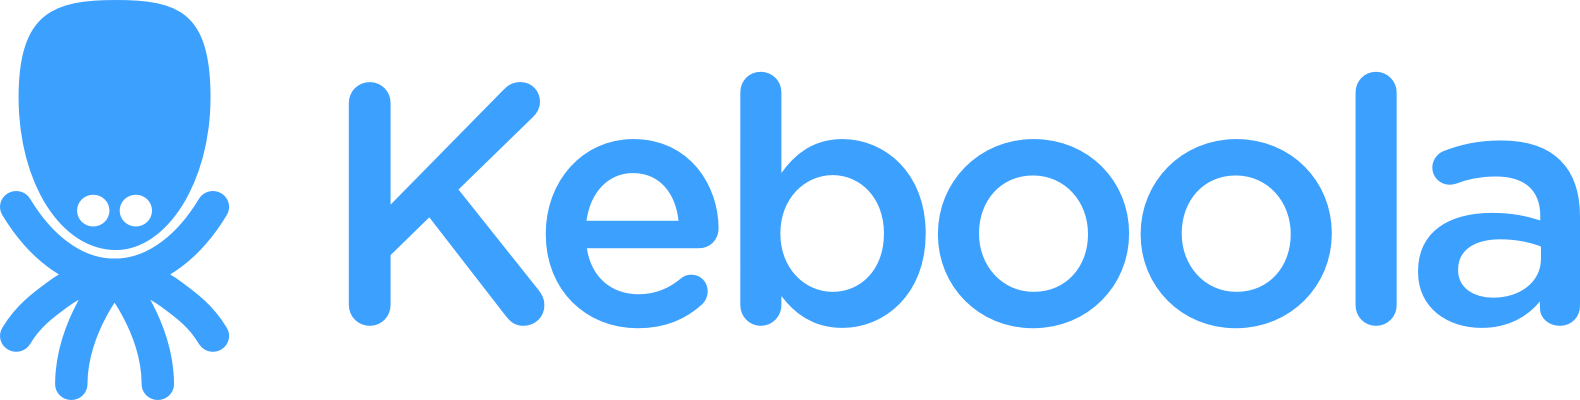 logo_blue.png